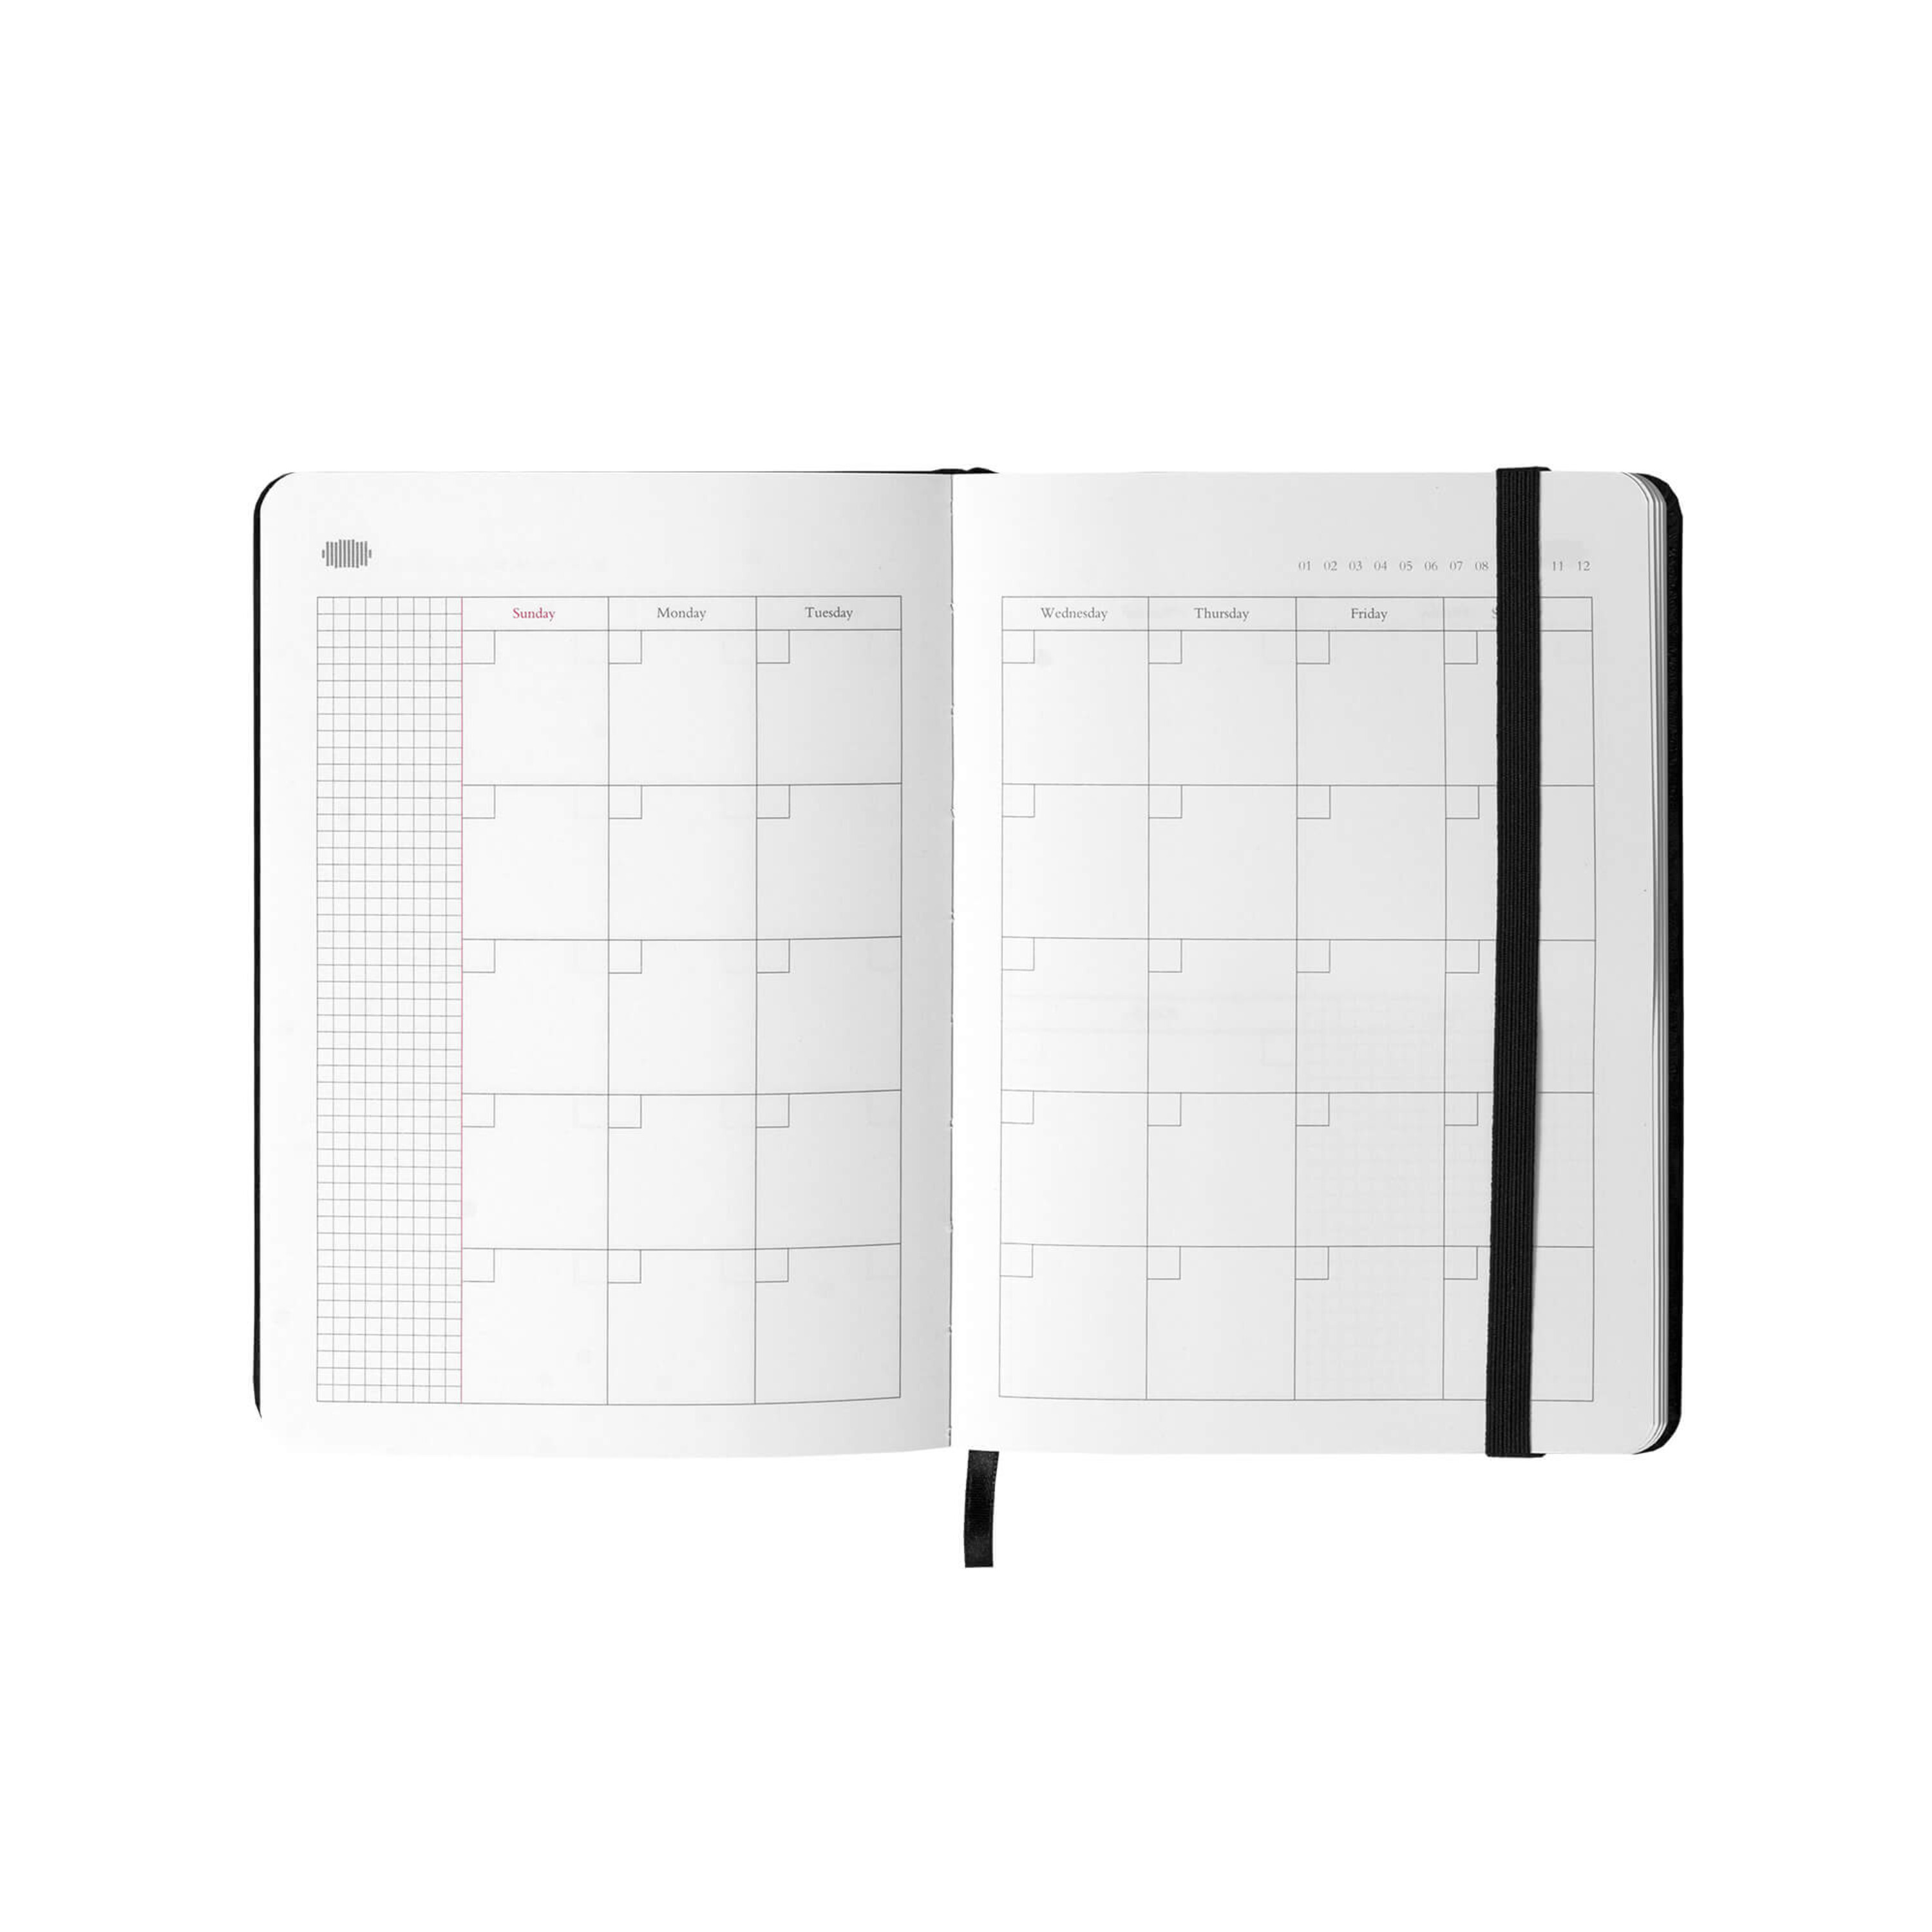 Bravado Jahreskalender Diary Ohne Jahr Zum Selbstgestalten Deutsche Grammophon Kalender